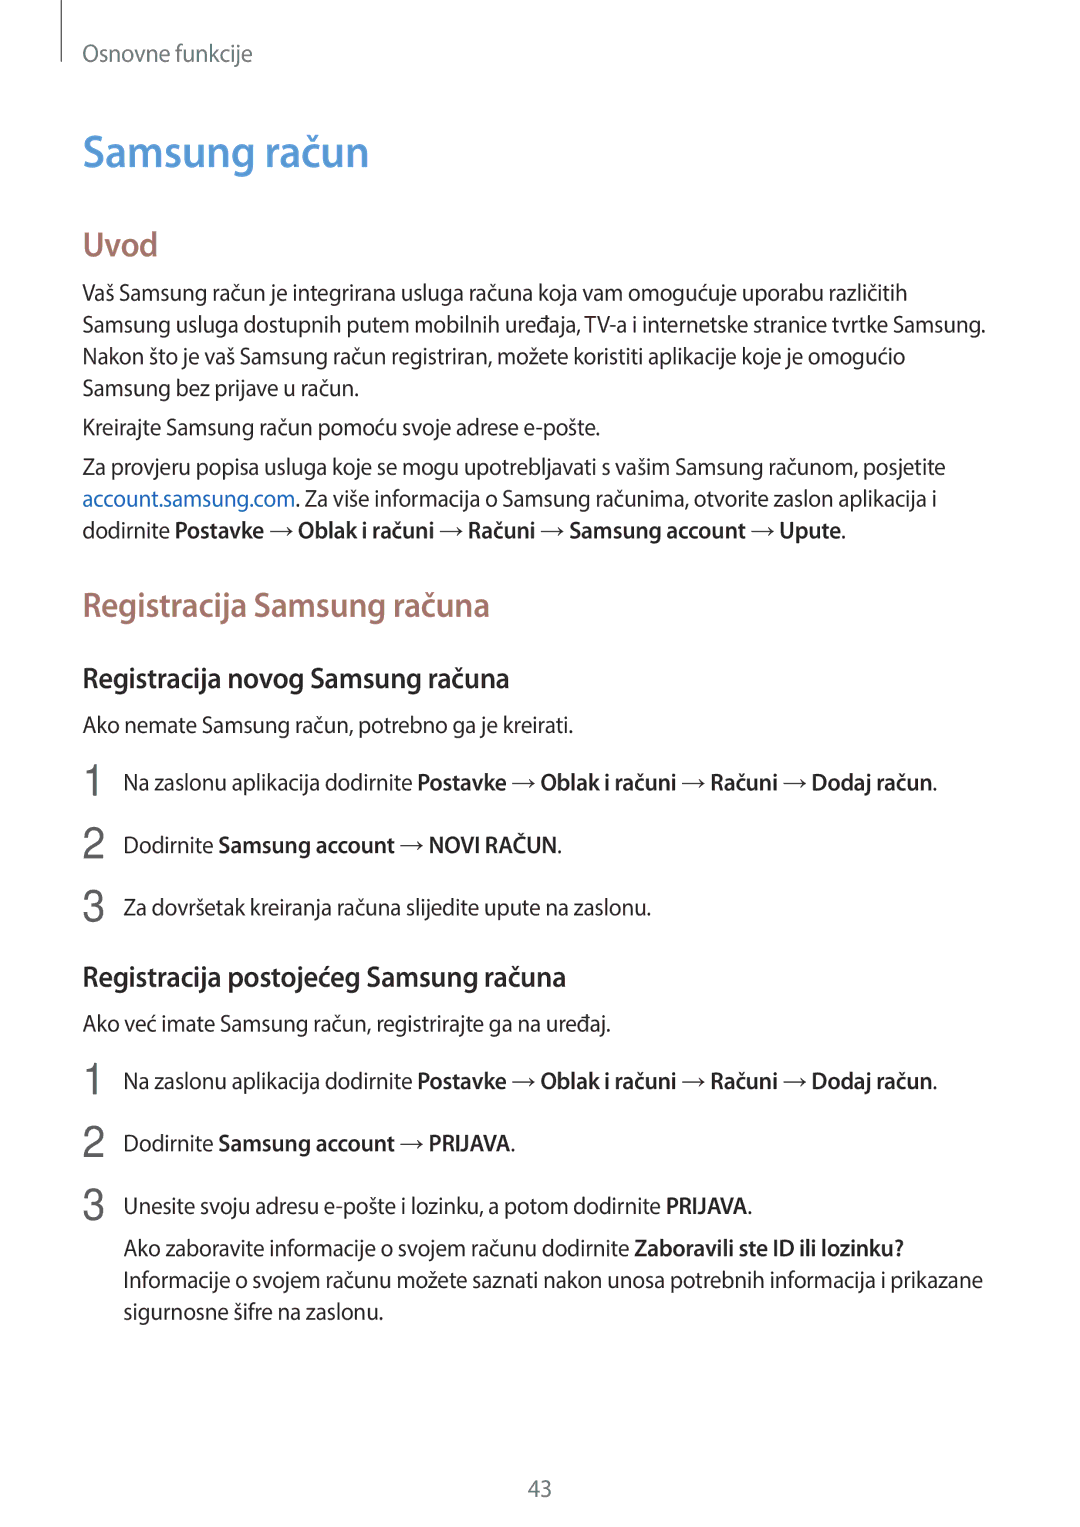 Samsung SM-J330FZKNDHR, SM-J330FZDNSEE, SM-J330FZKNSEE Registracija Samsung računa, Registracija novog Samsung računa 